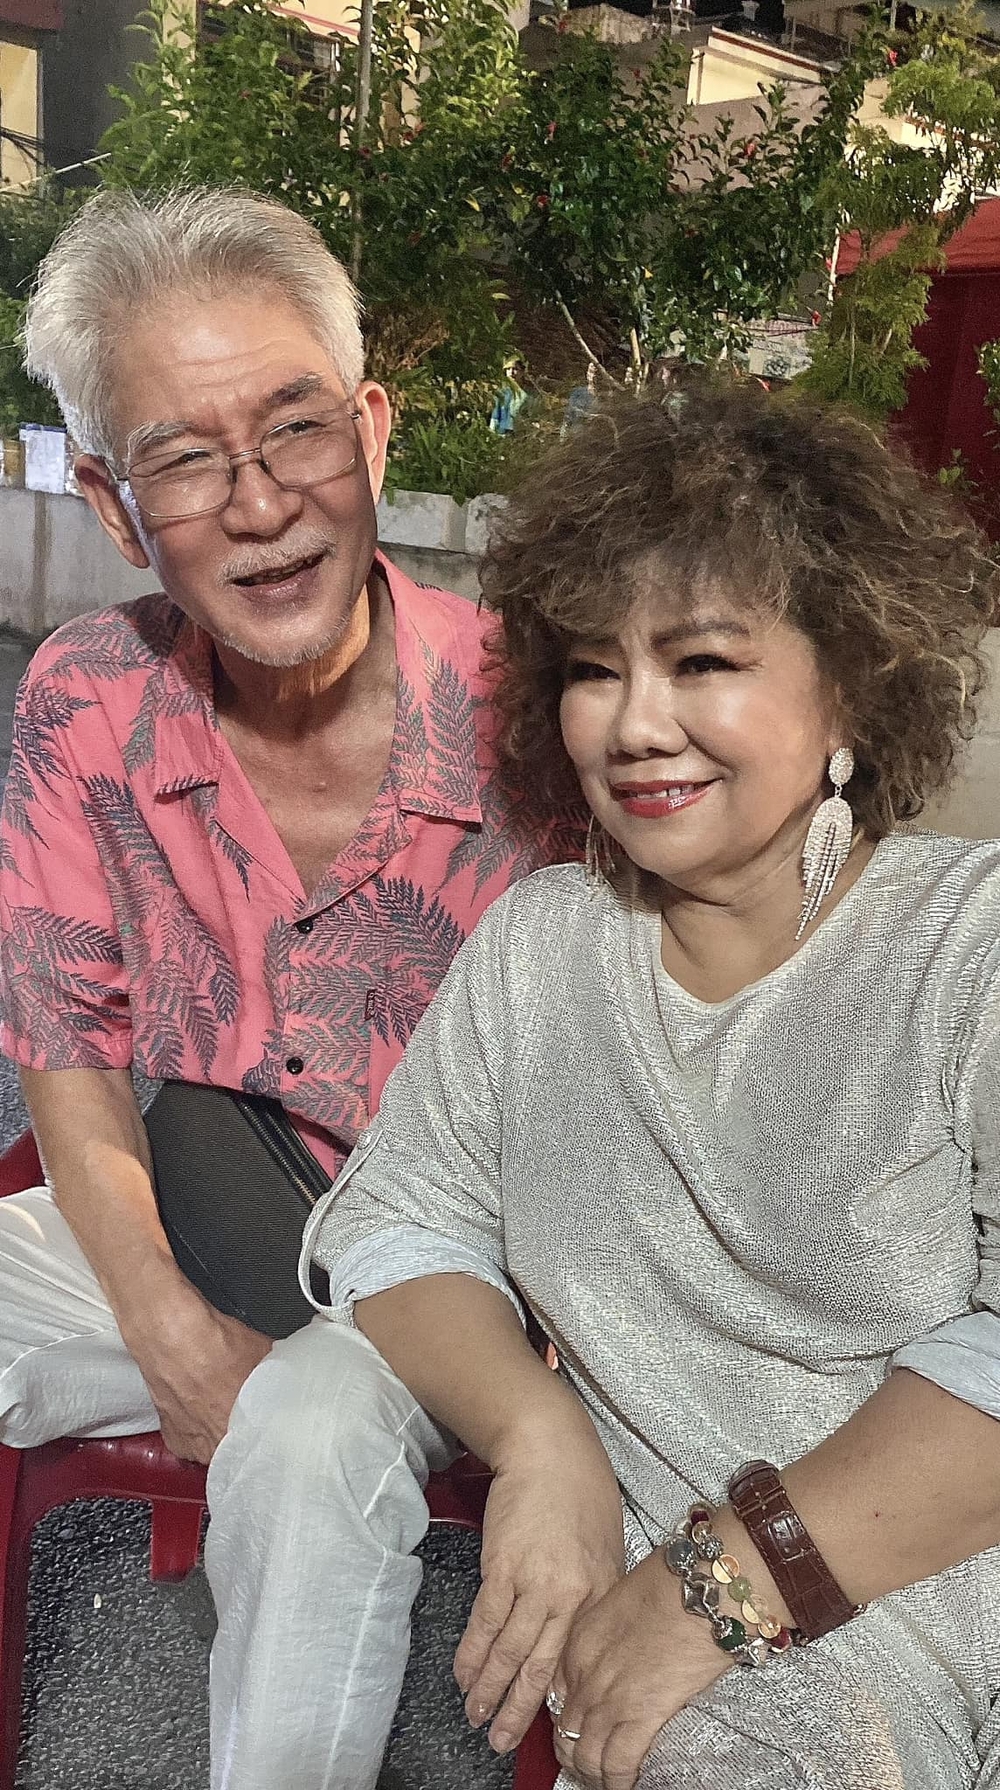 Cuộc sống bình yên, viên mãn ở tuổi 73 của NSND Thanh Hoa bên ông xã là nghệ sĩ xiếc kém tuổi - Ảnh 6.